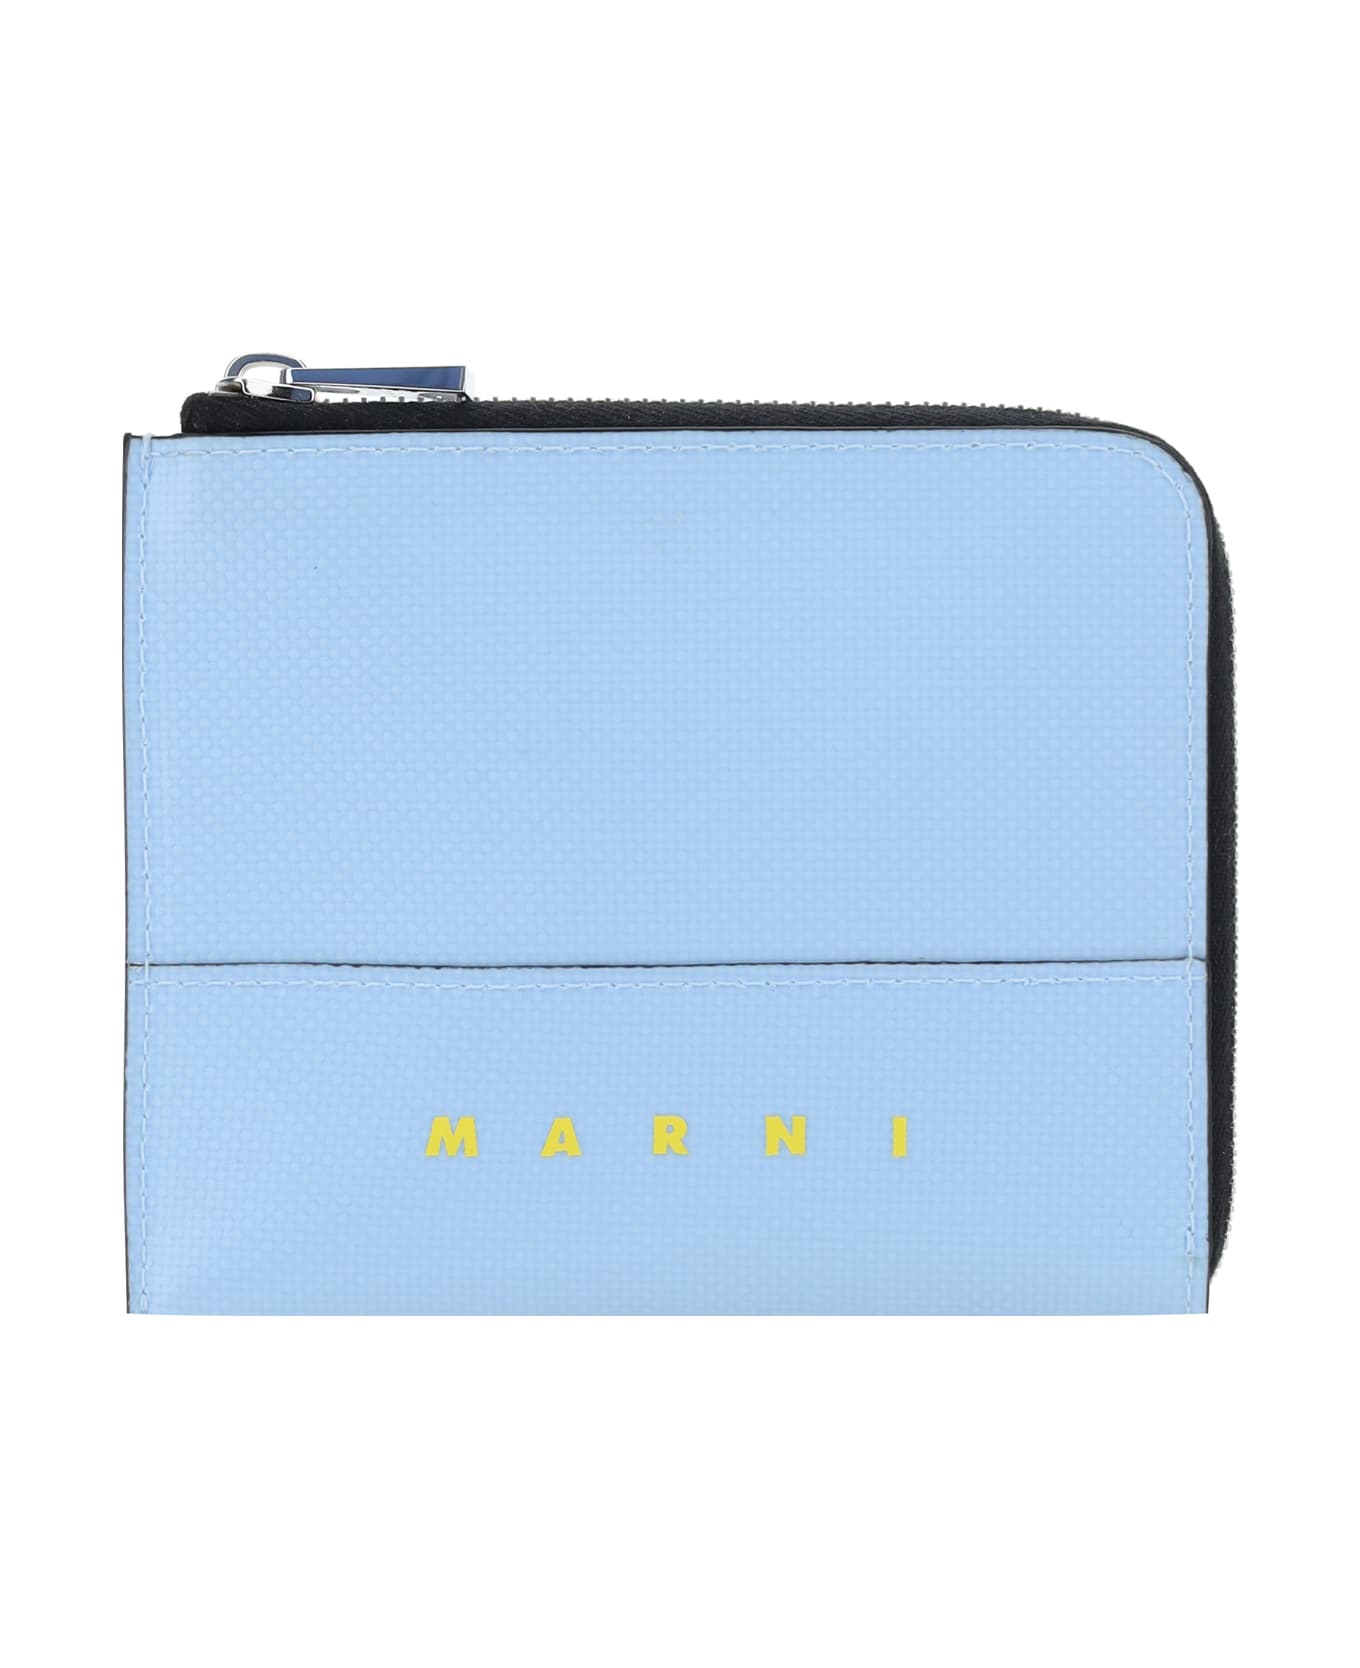 Marni Wallet - Light Blue 財布